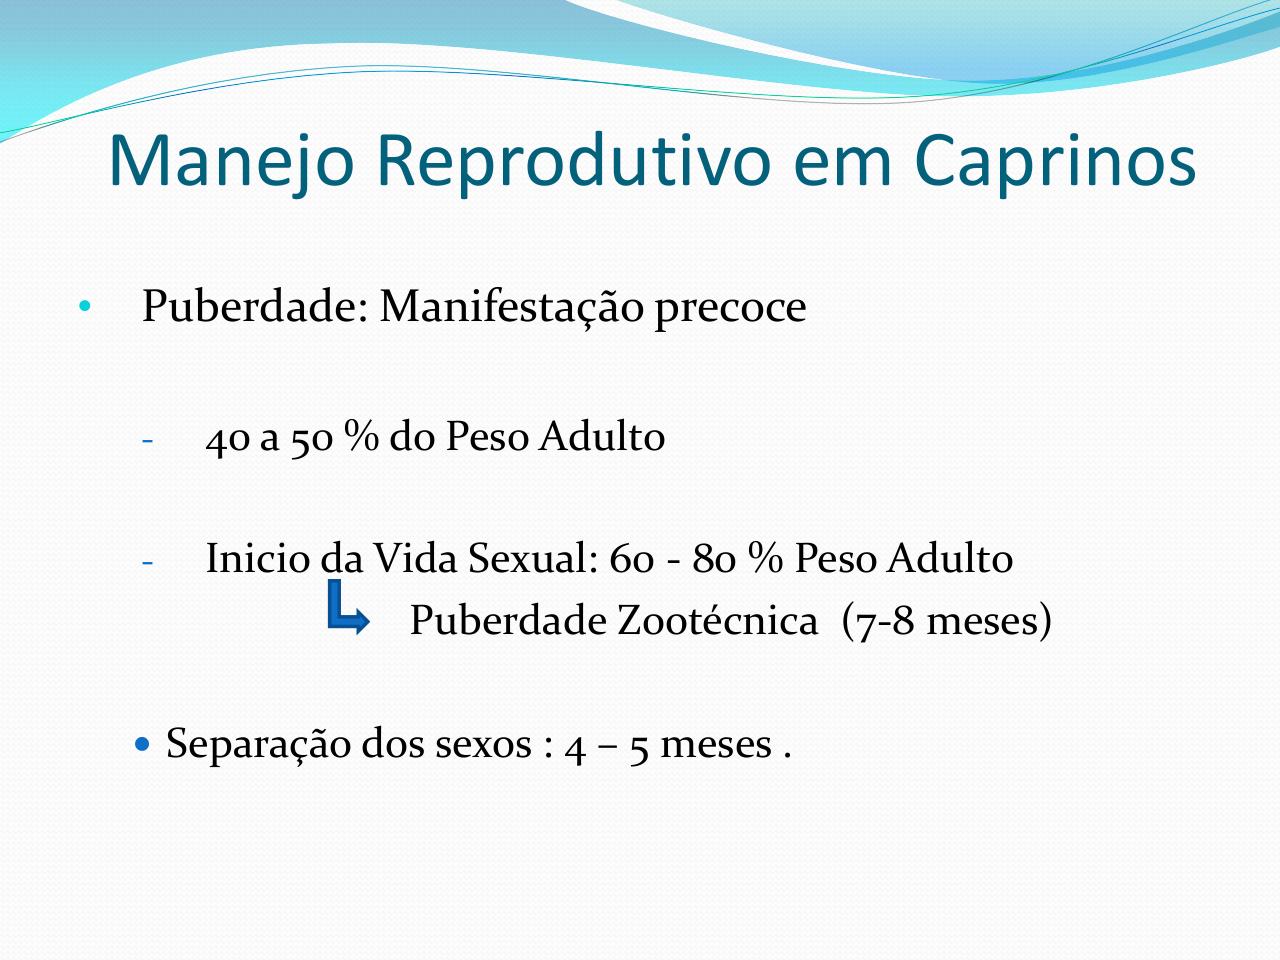 ApresentaÃ§Ã£o - Manejo Reprodutivo Caprinos.pdf - page 3/41